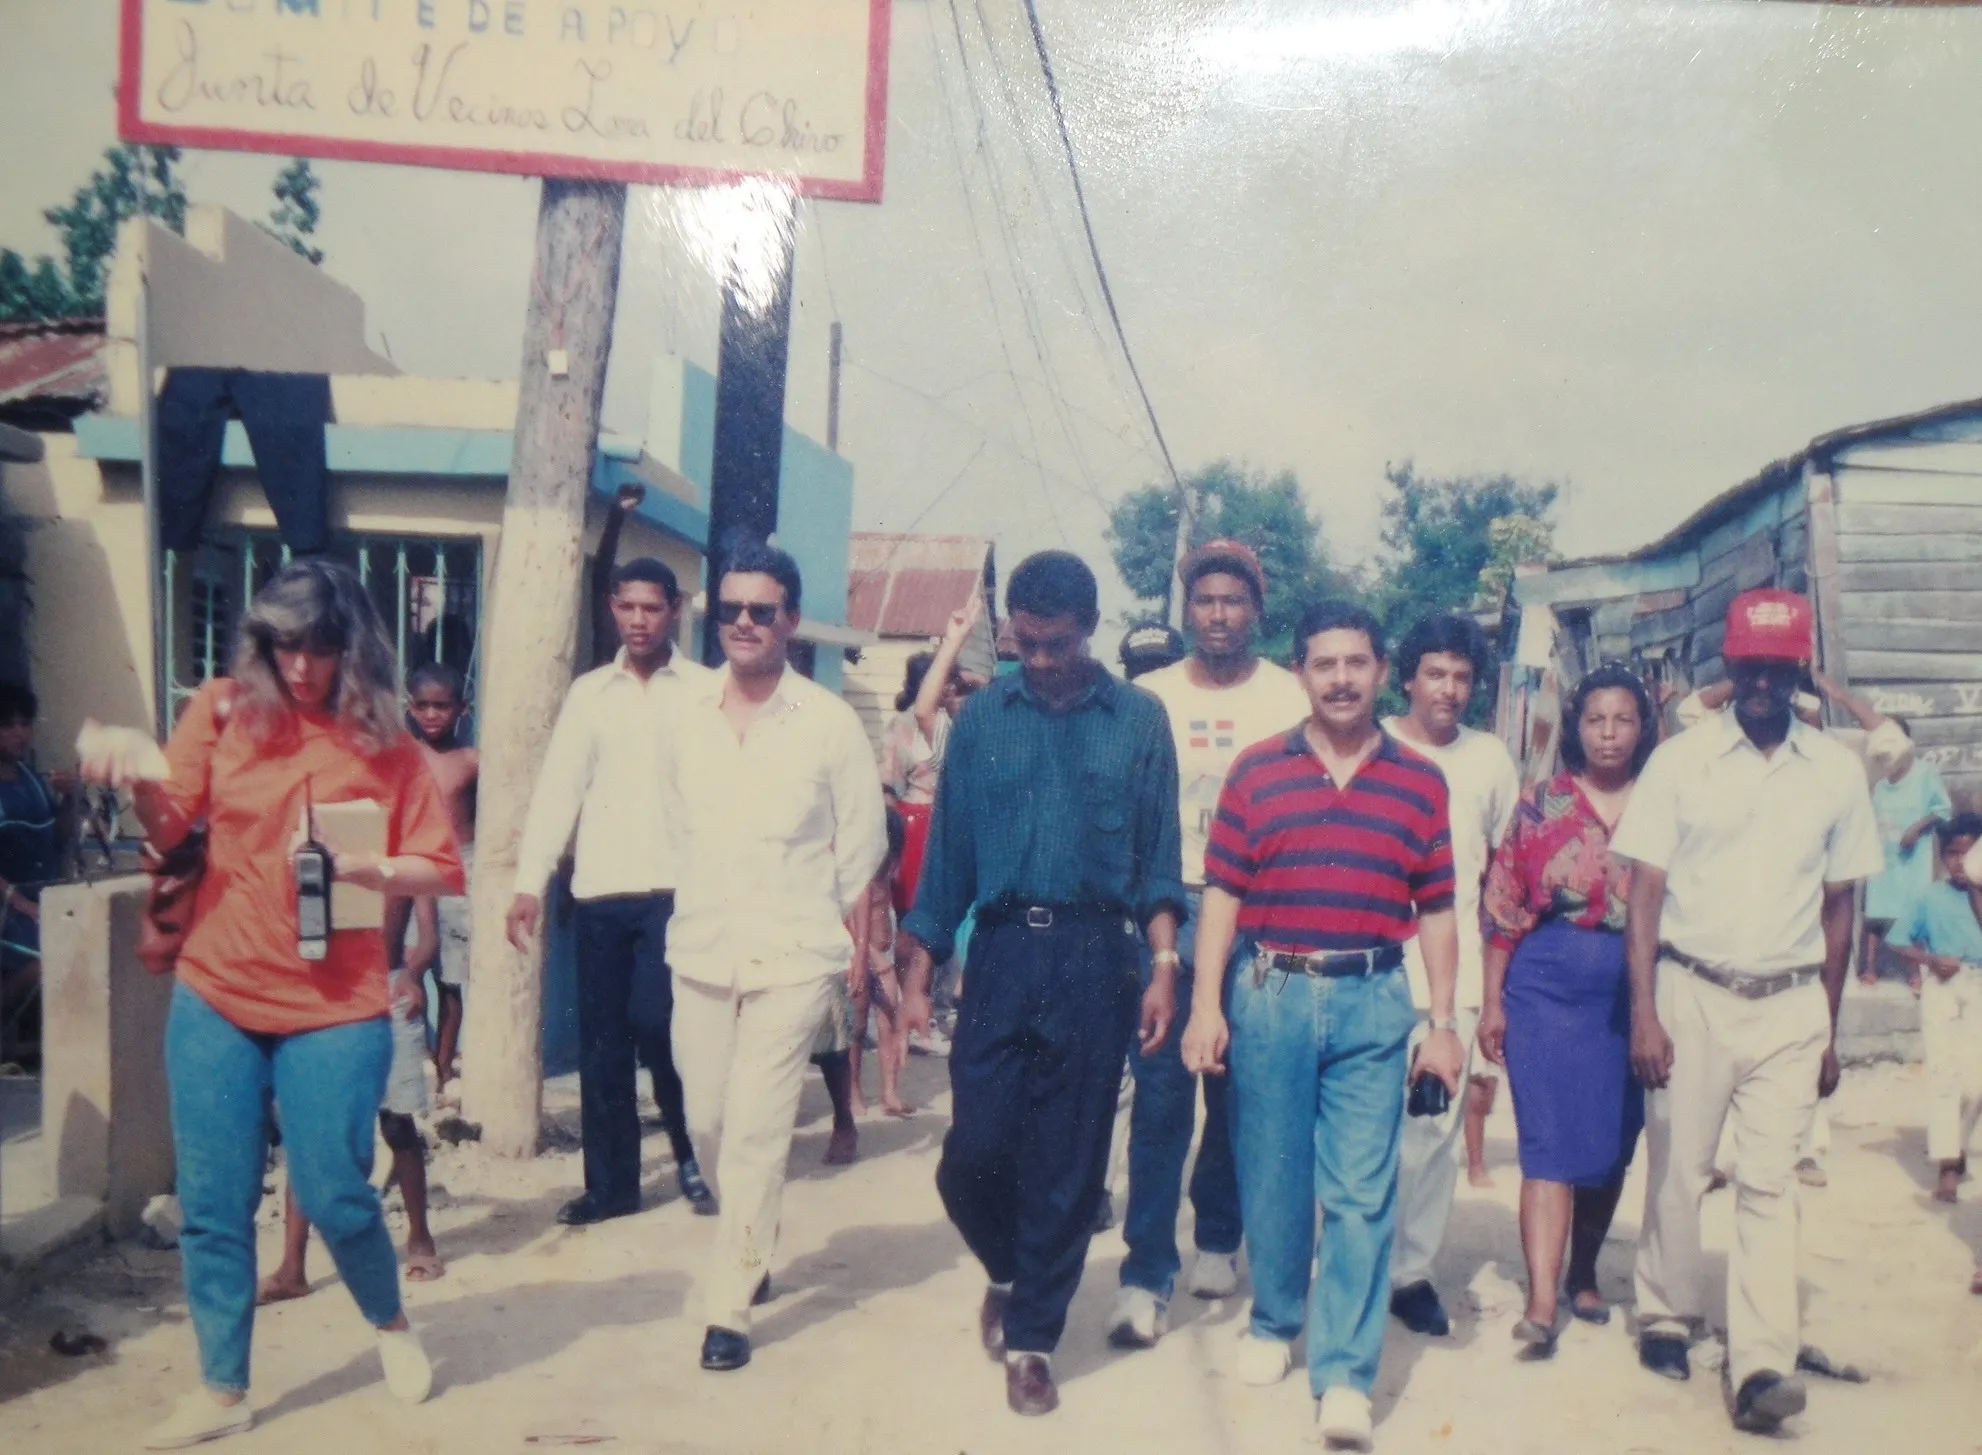 Loma del Chivo, la comunidad que derrotó la delincuencia y cambió la vida de su gente